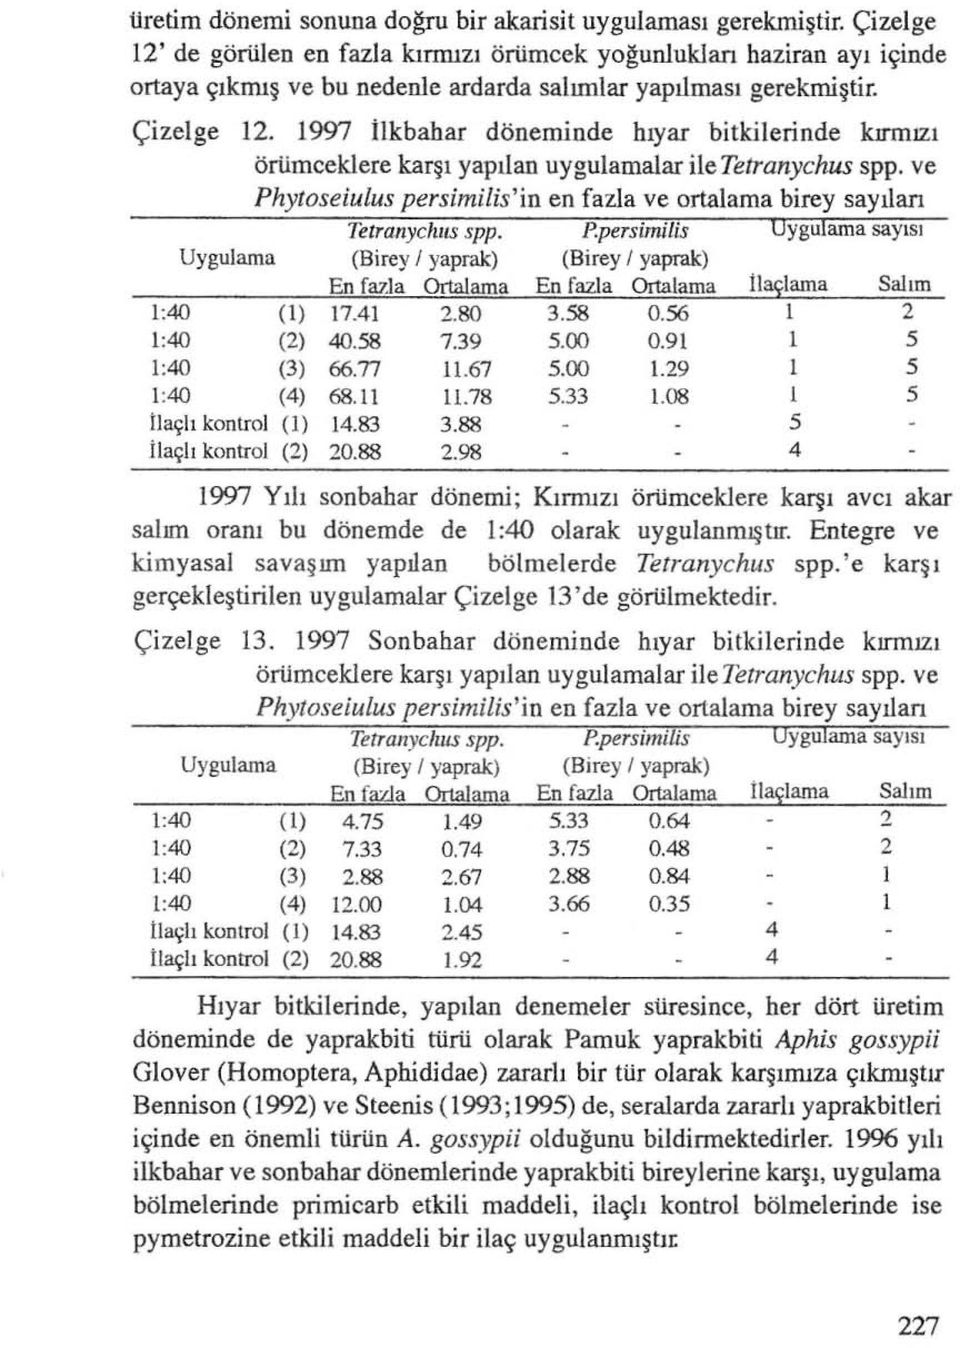 1997 Ilkbahar döneminde hıyar bitkilerinde kırmızı örürncekiere karşı yapılan uygulamalar ile Tetranychus spp. ve Ph